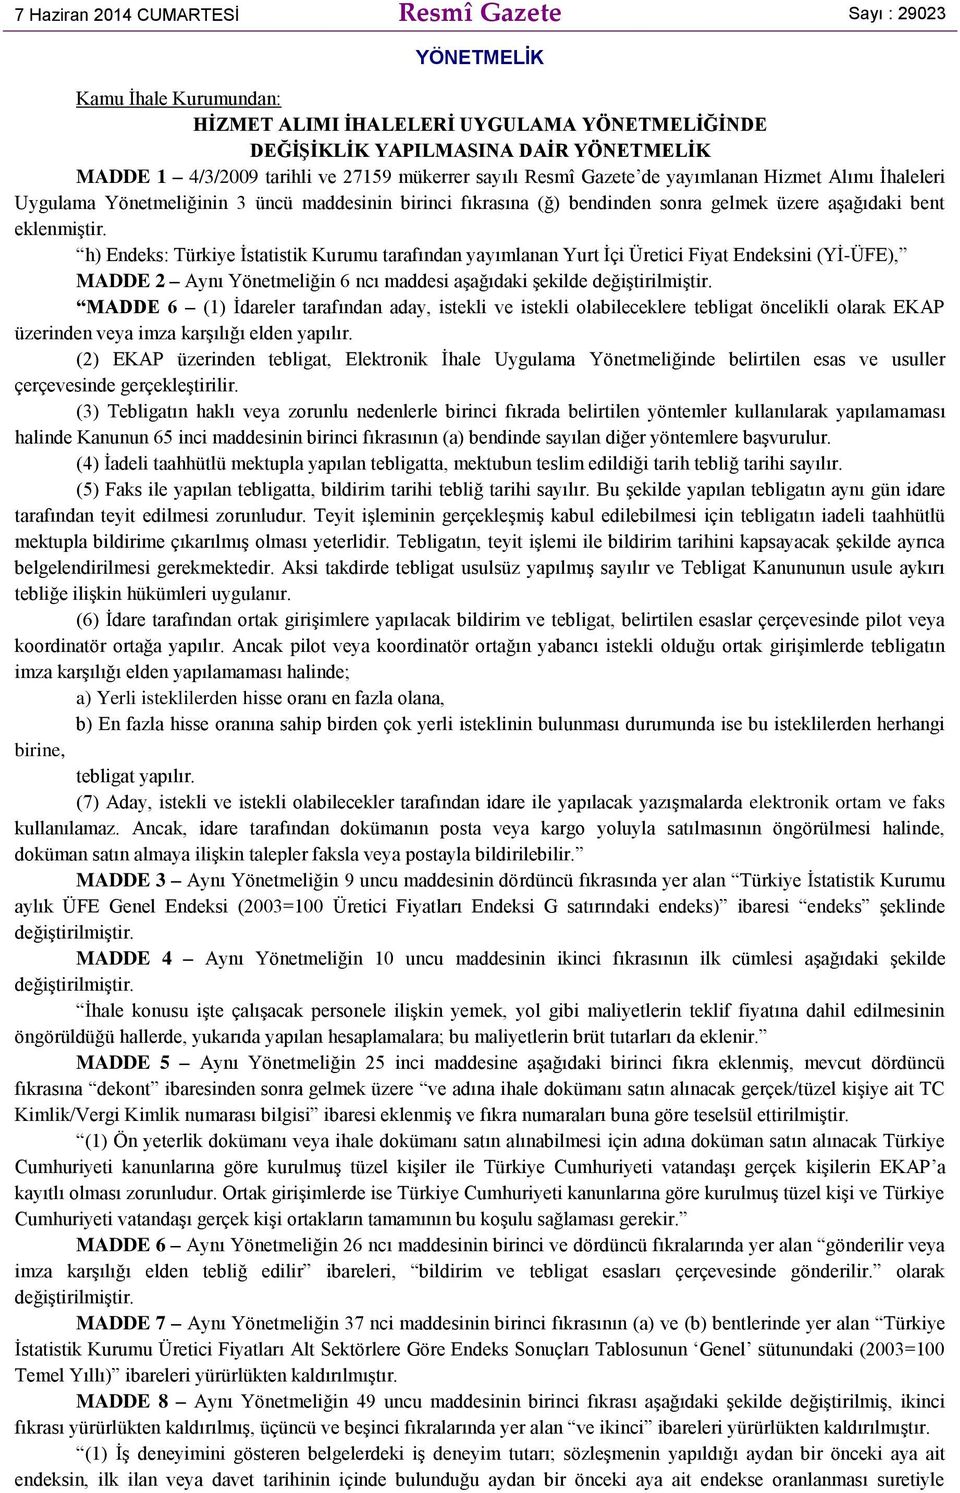 h) Endeks: Türkiye İstatistik Kurumu tarafından yayımlanan Yurt İçi Üretici Fiyat Endeksini (Yİ-ÜFE), MADDE 2 Aynı Yönetmeliğin 6 ncı maddesi aşağıdaki şekilde değiştirilmiştir.